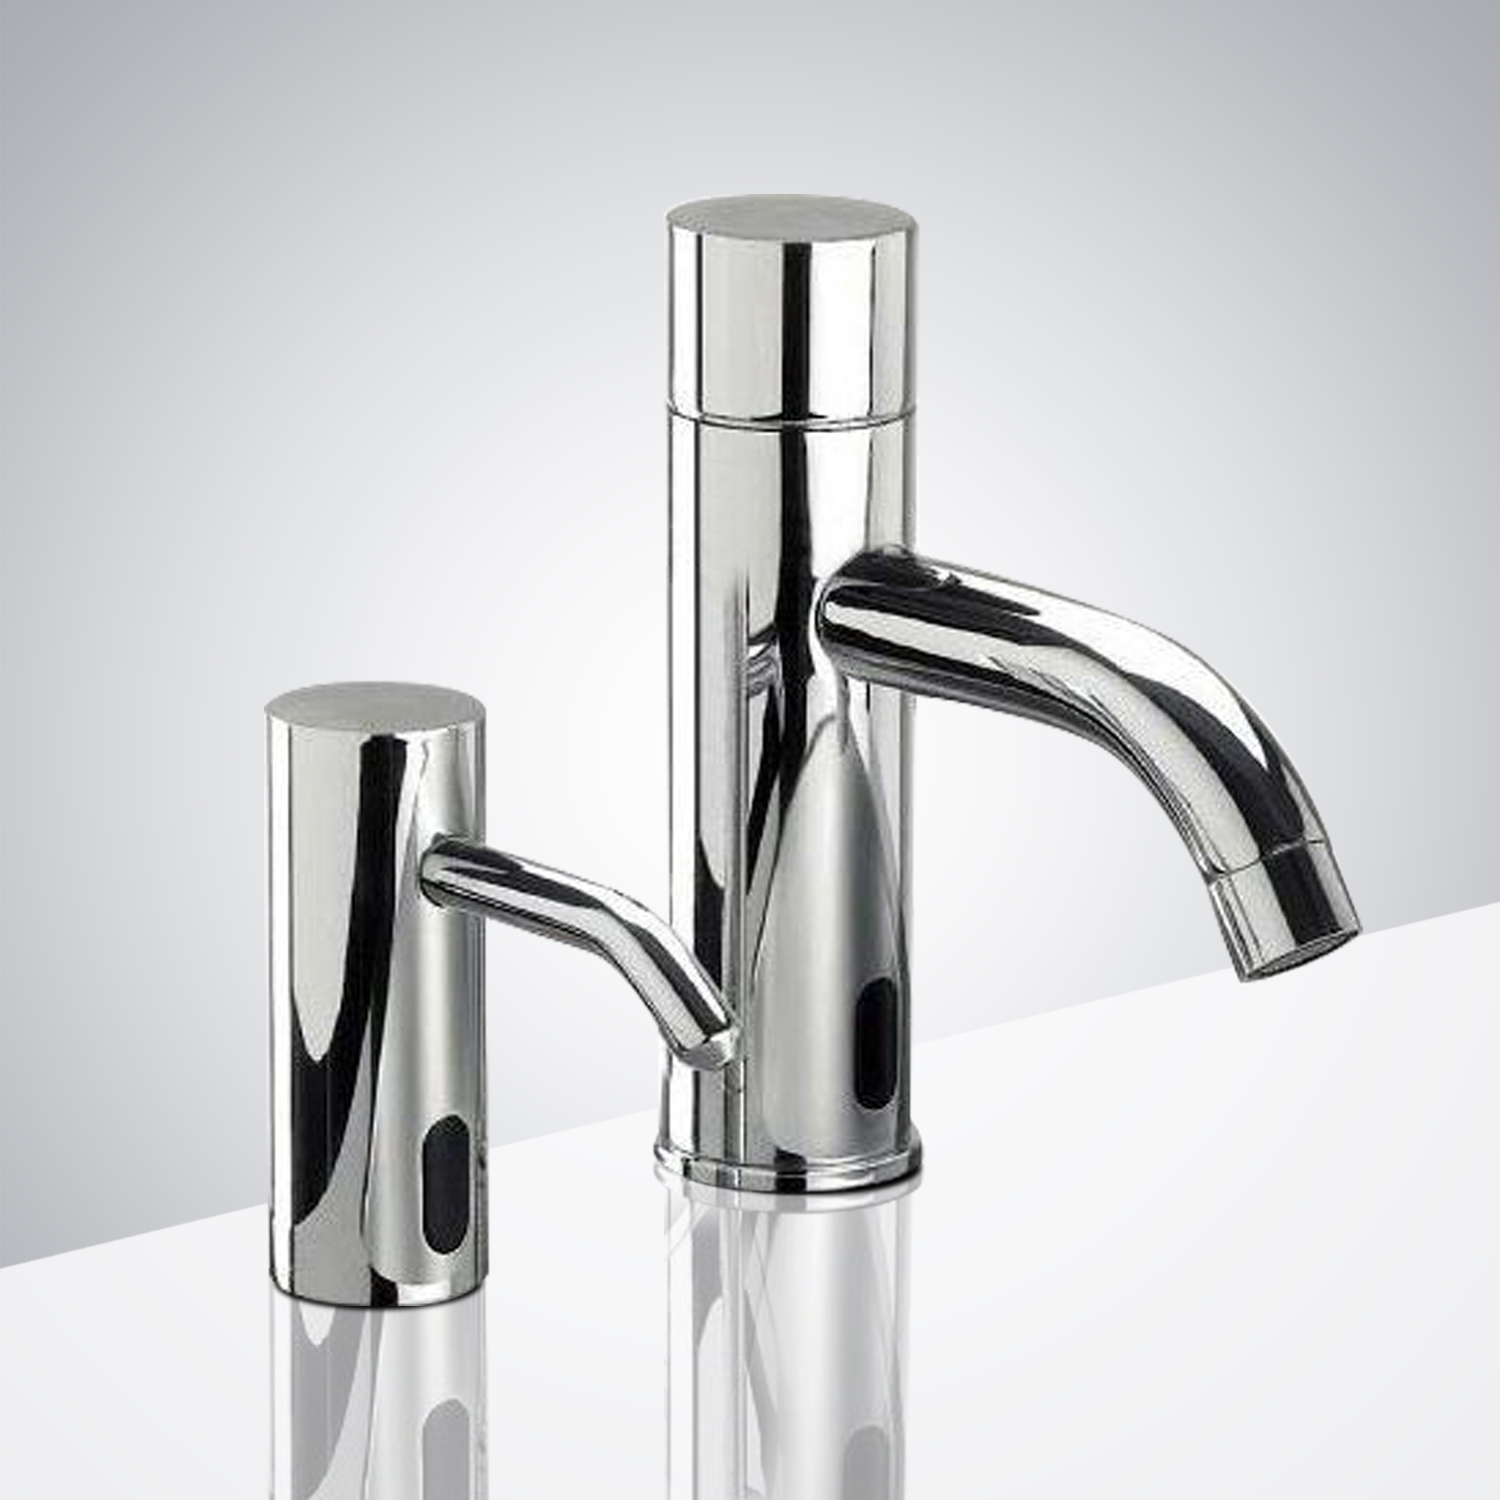 Fontana Sénart Deck Mount Commercial Motion Sensor Faucet & Automatic Soap Dispenser for Restrooms